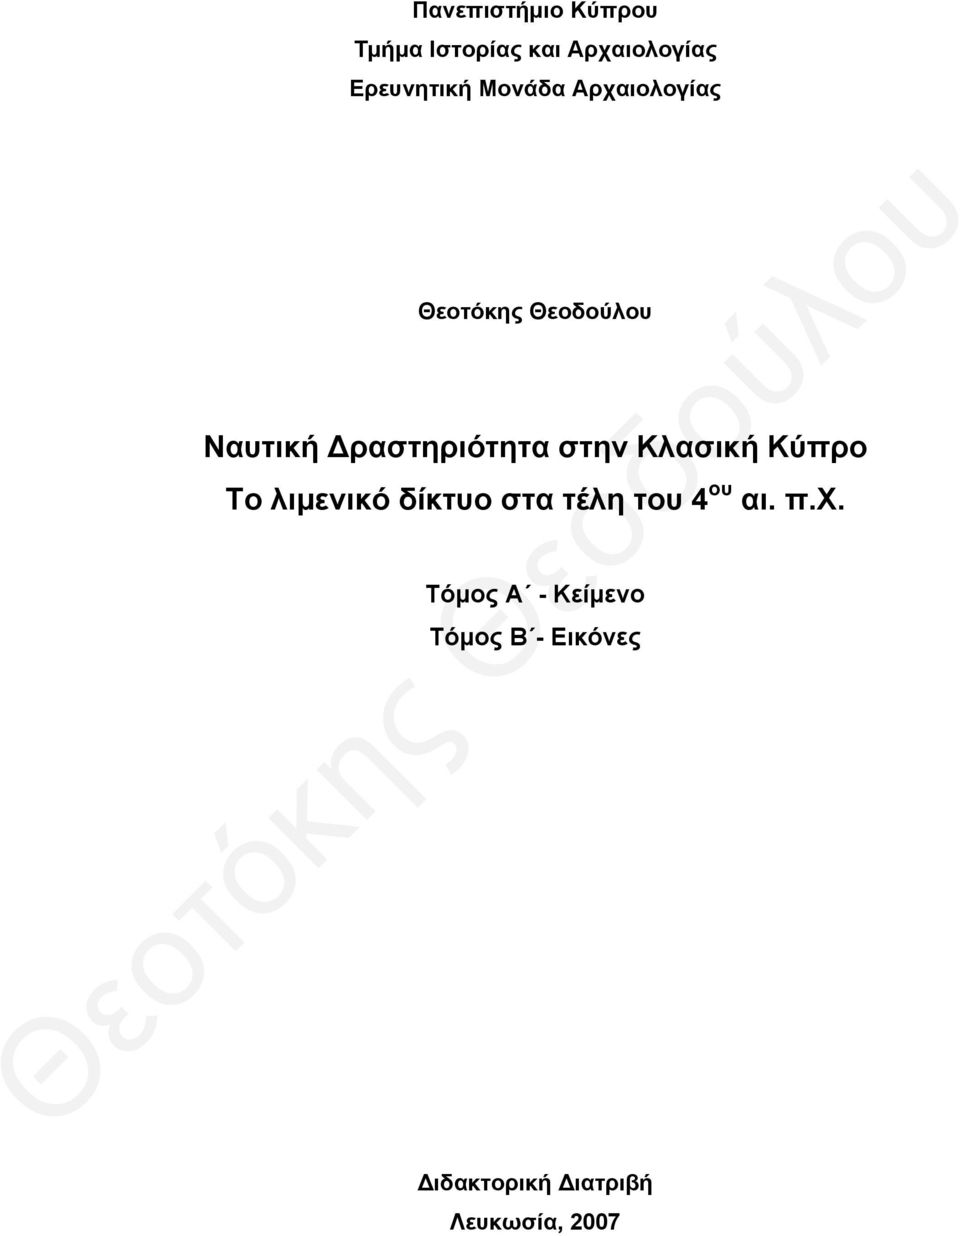 Κλασική Κύπρο Το λιμενικό δίκτυο στα τέλη τ 4 αι. π.χ.